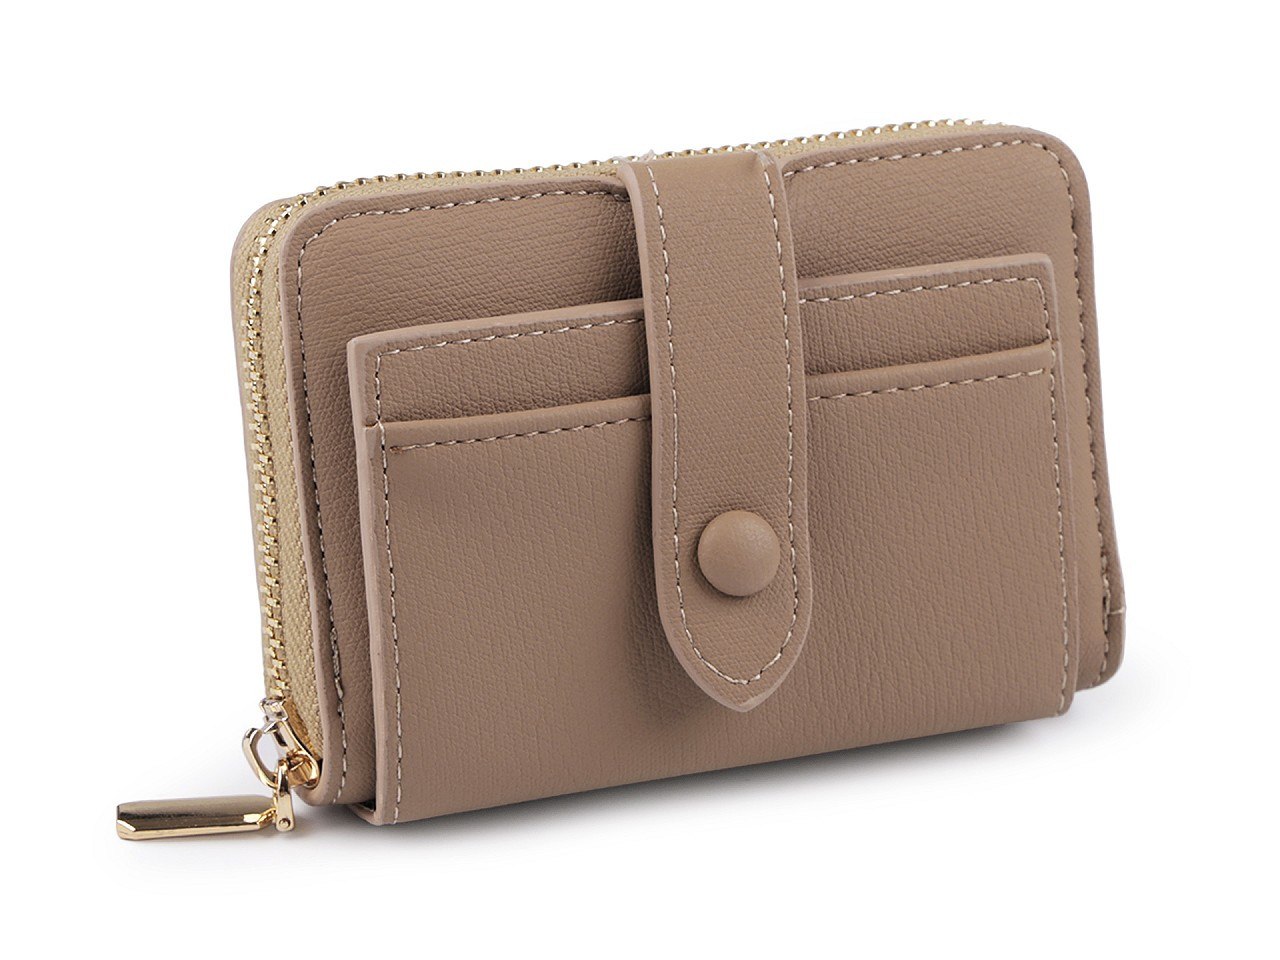 Dámská peněženka 8x11,5 cm, barva 3 béžová